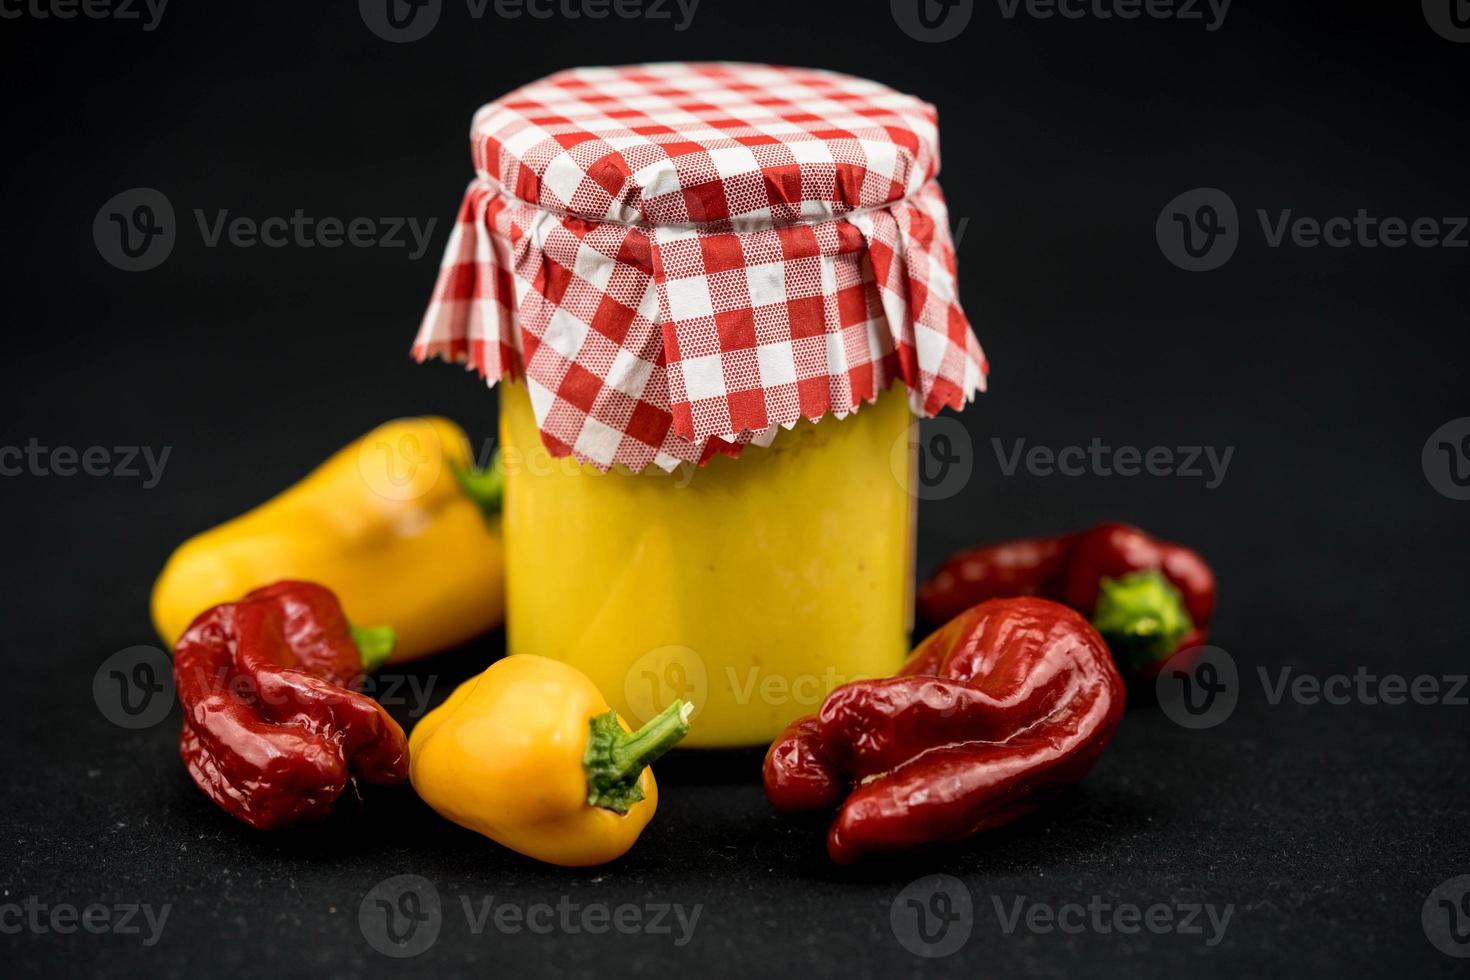 huisgemaakte extra hete mosterd met chilipeper foto